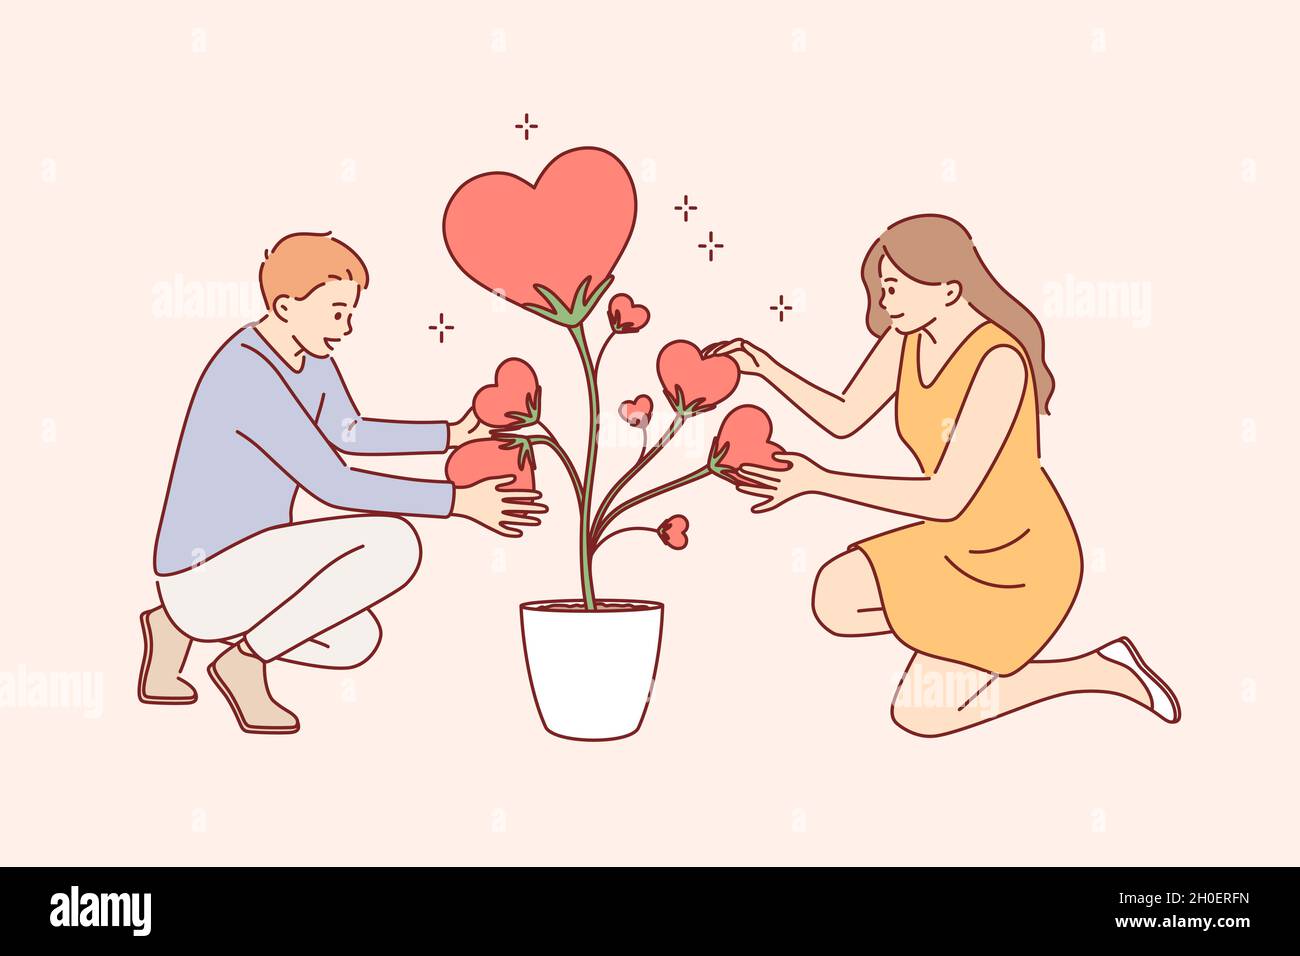 Kümmern sich um Liebe und Pflanzen Konzept. Junge lächelnde Paar Frau und  Mann Comic-Figuren sitzen halten herzförmige Blätter der Liebe Pflanze in  Topf zusammen Vektor-Illustration Stock-Vektorgrafik - Alamy